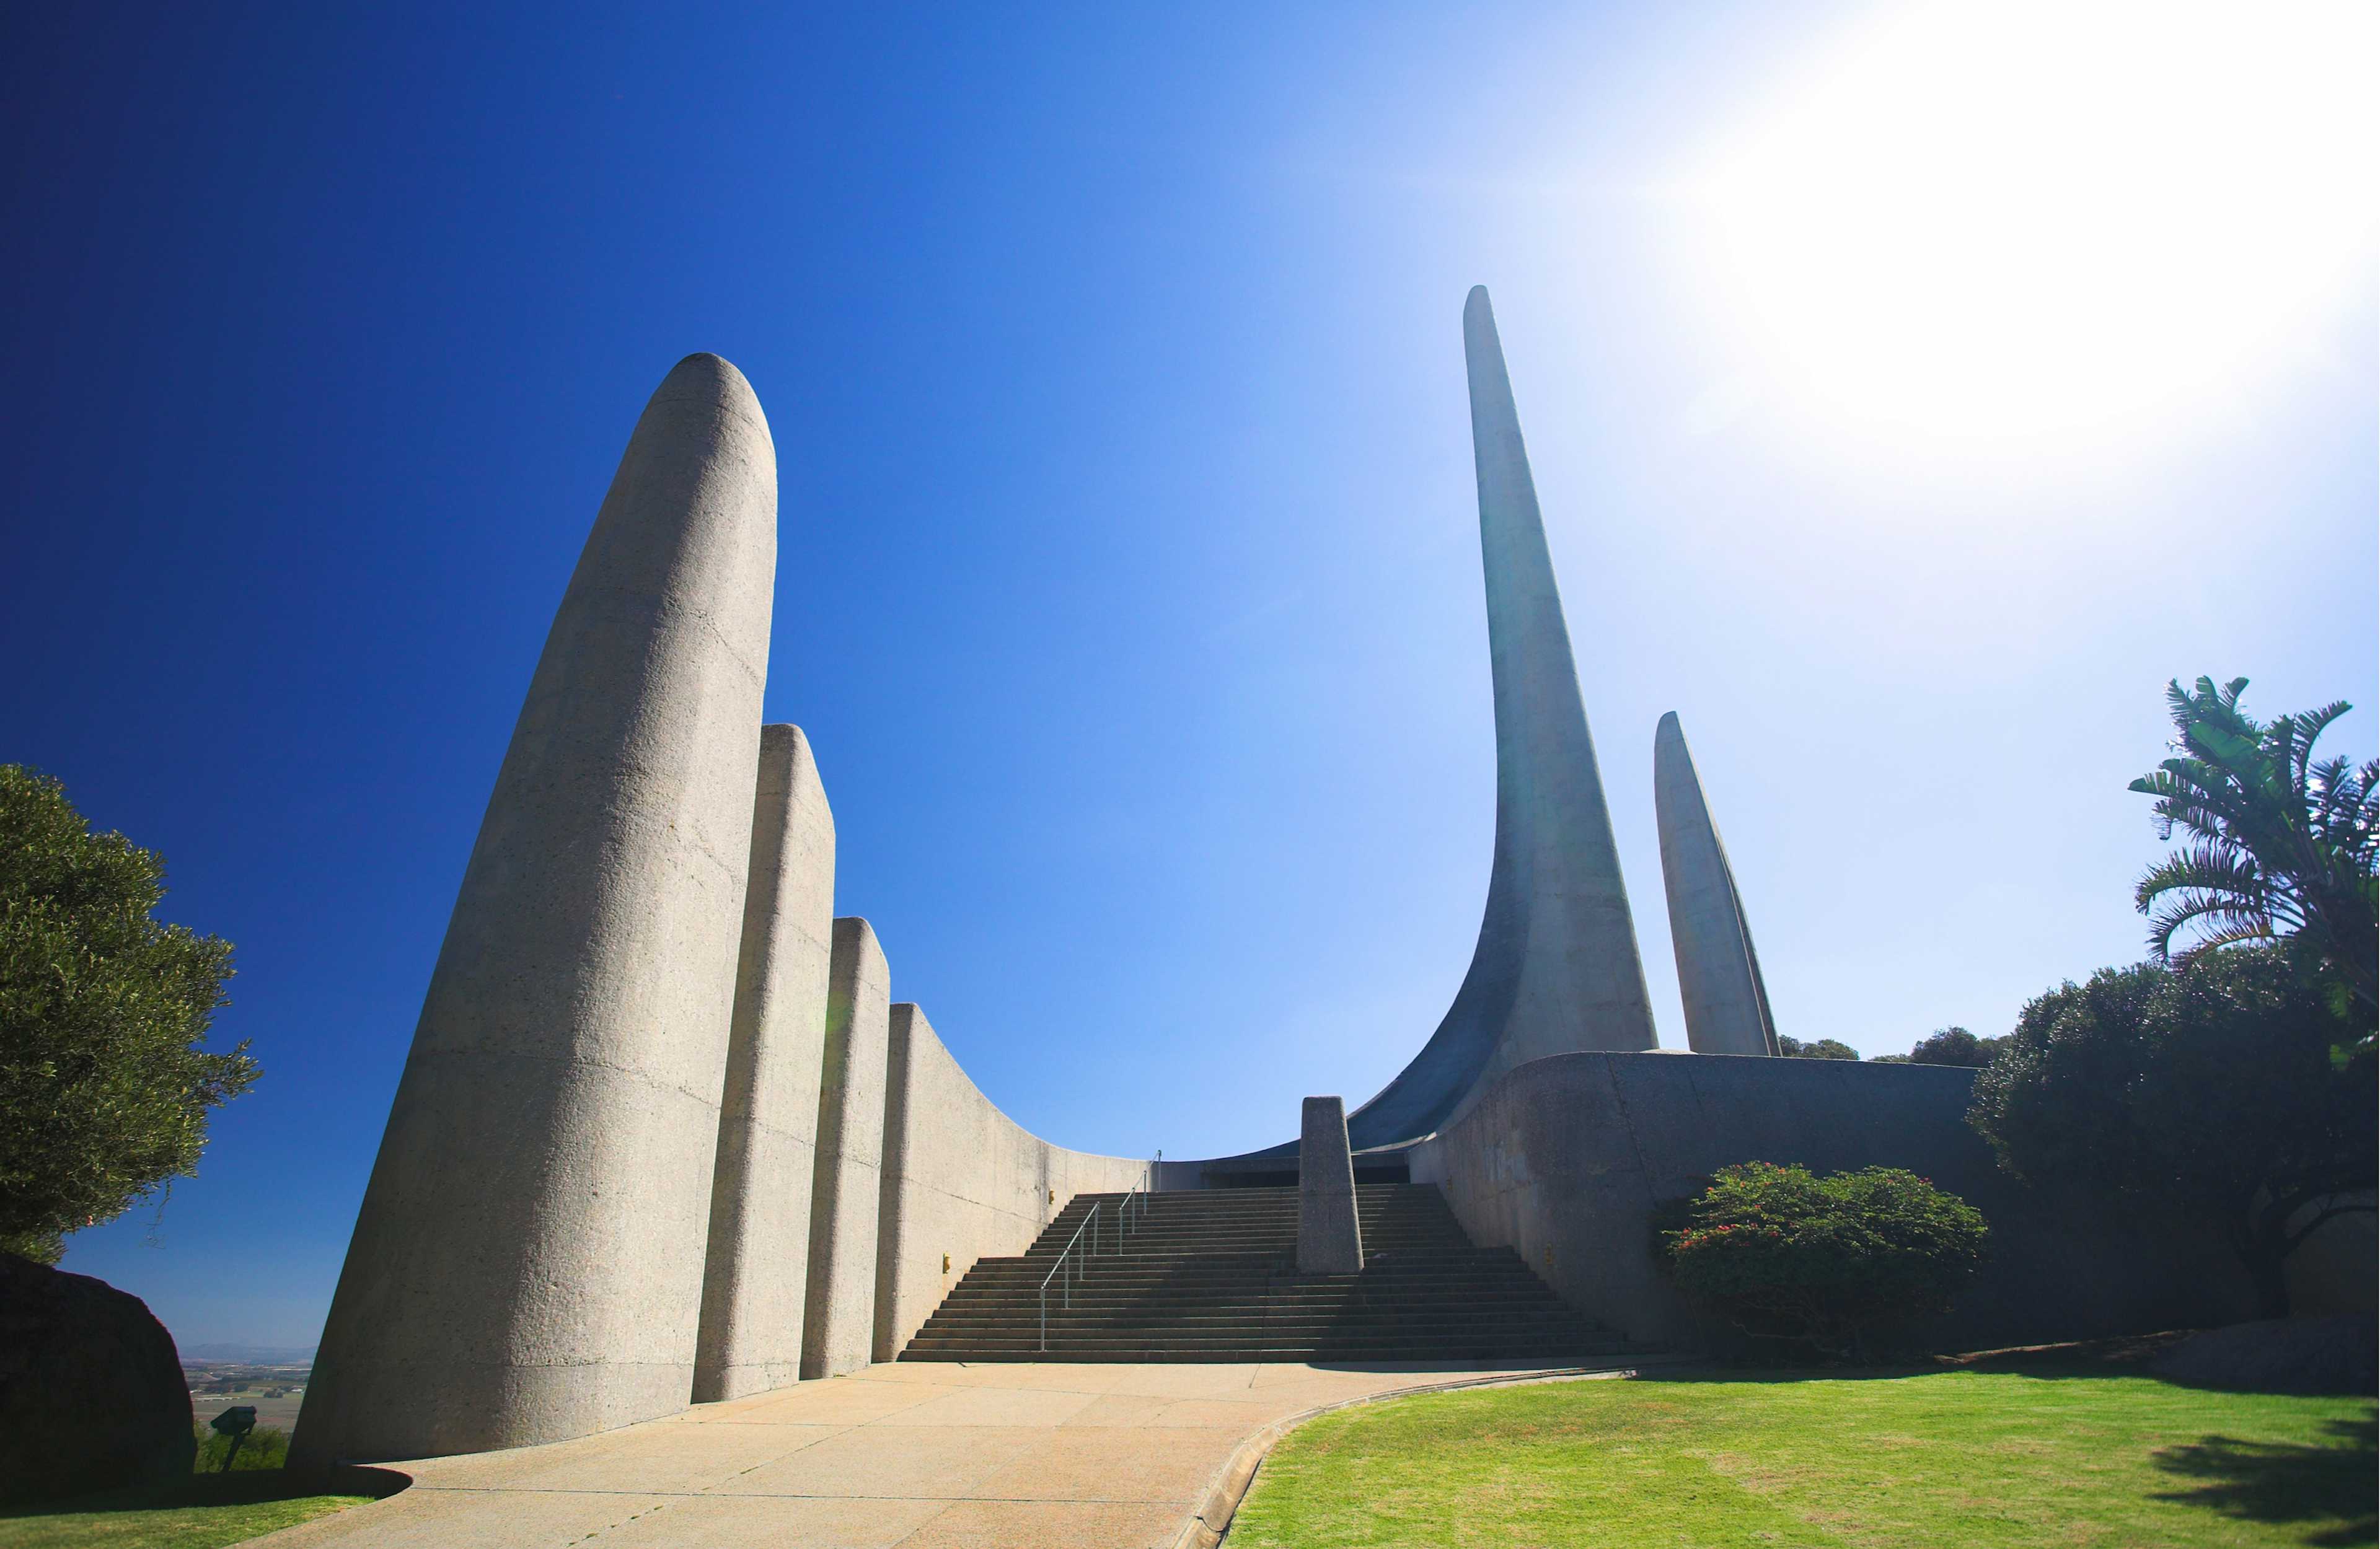 Afrikaans Language Monument